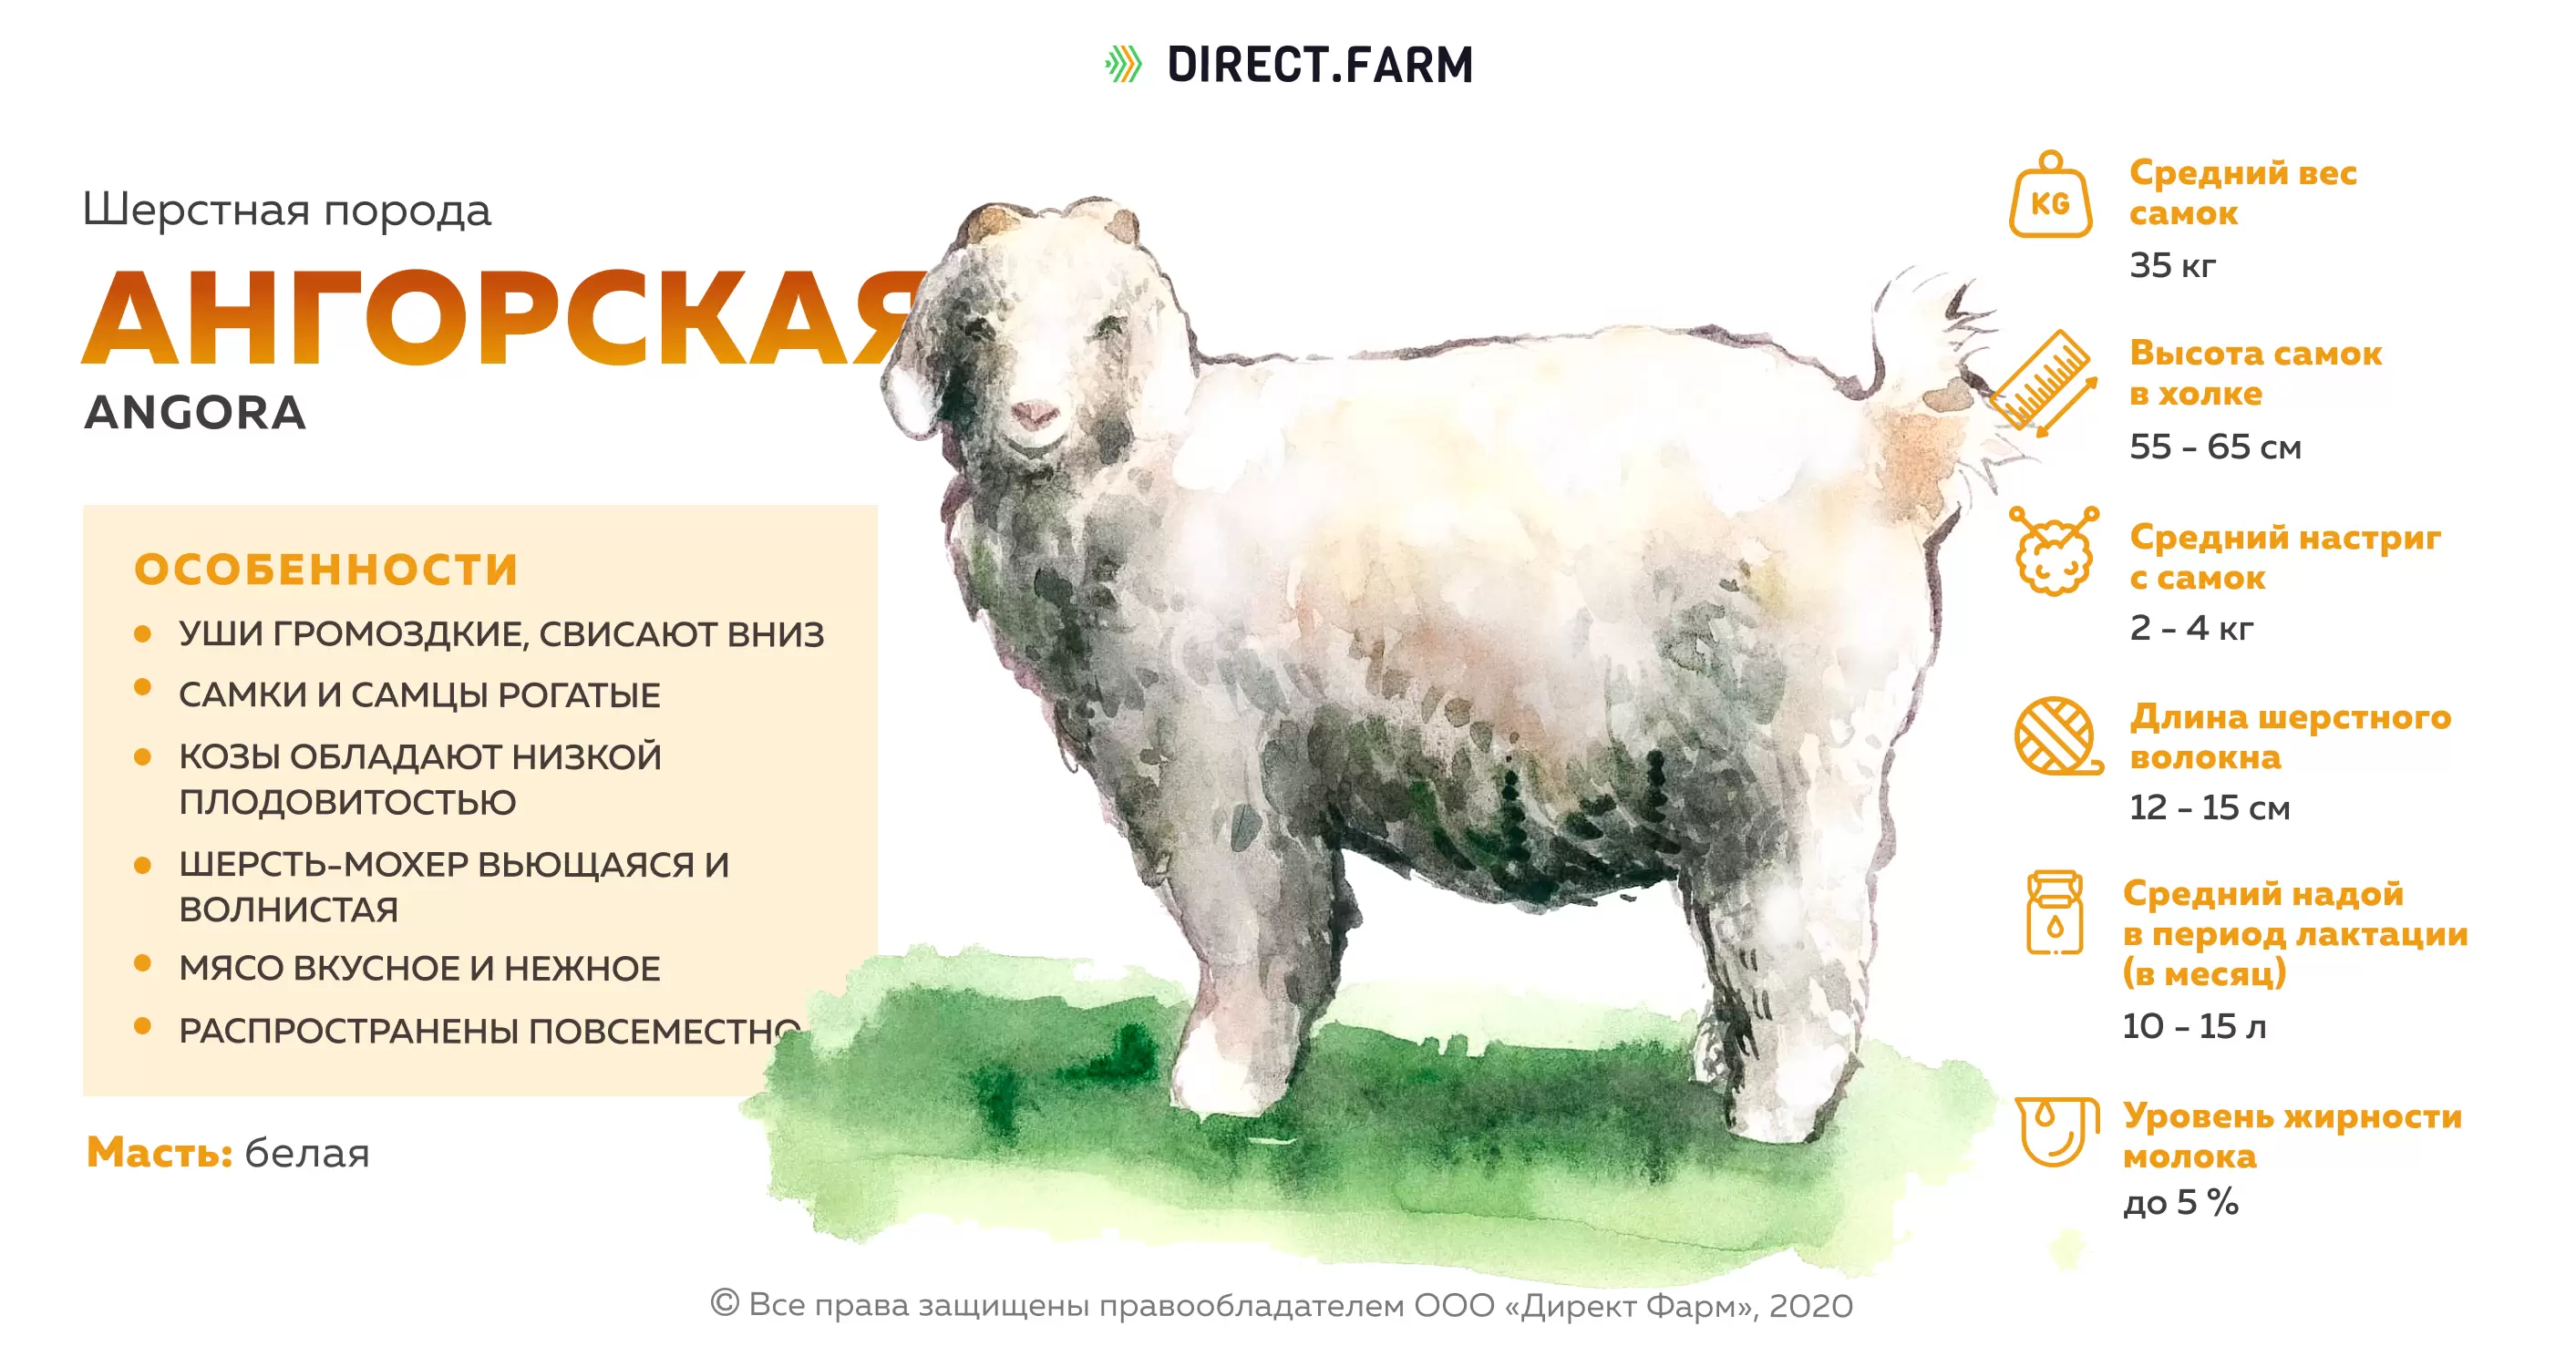 Молочная продуктивность коз разных пород. Продуктивность шерстных пород коз. Направление продуктивности овец. Овцы шерстного направления продуктивности. Характеристика пород коз